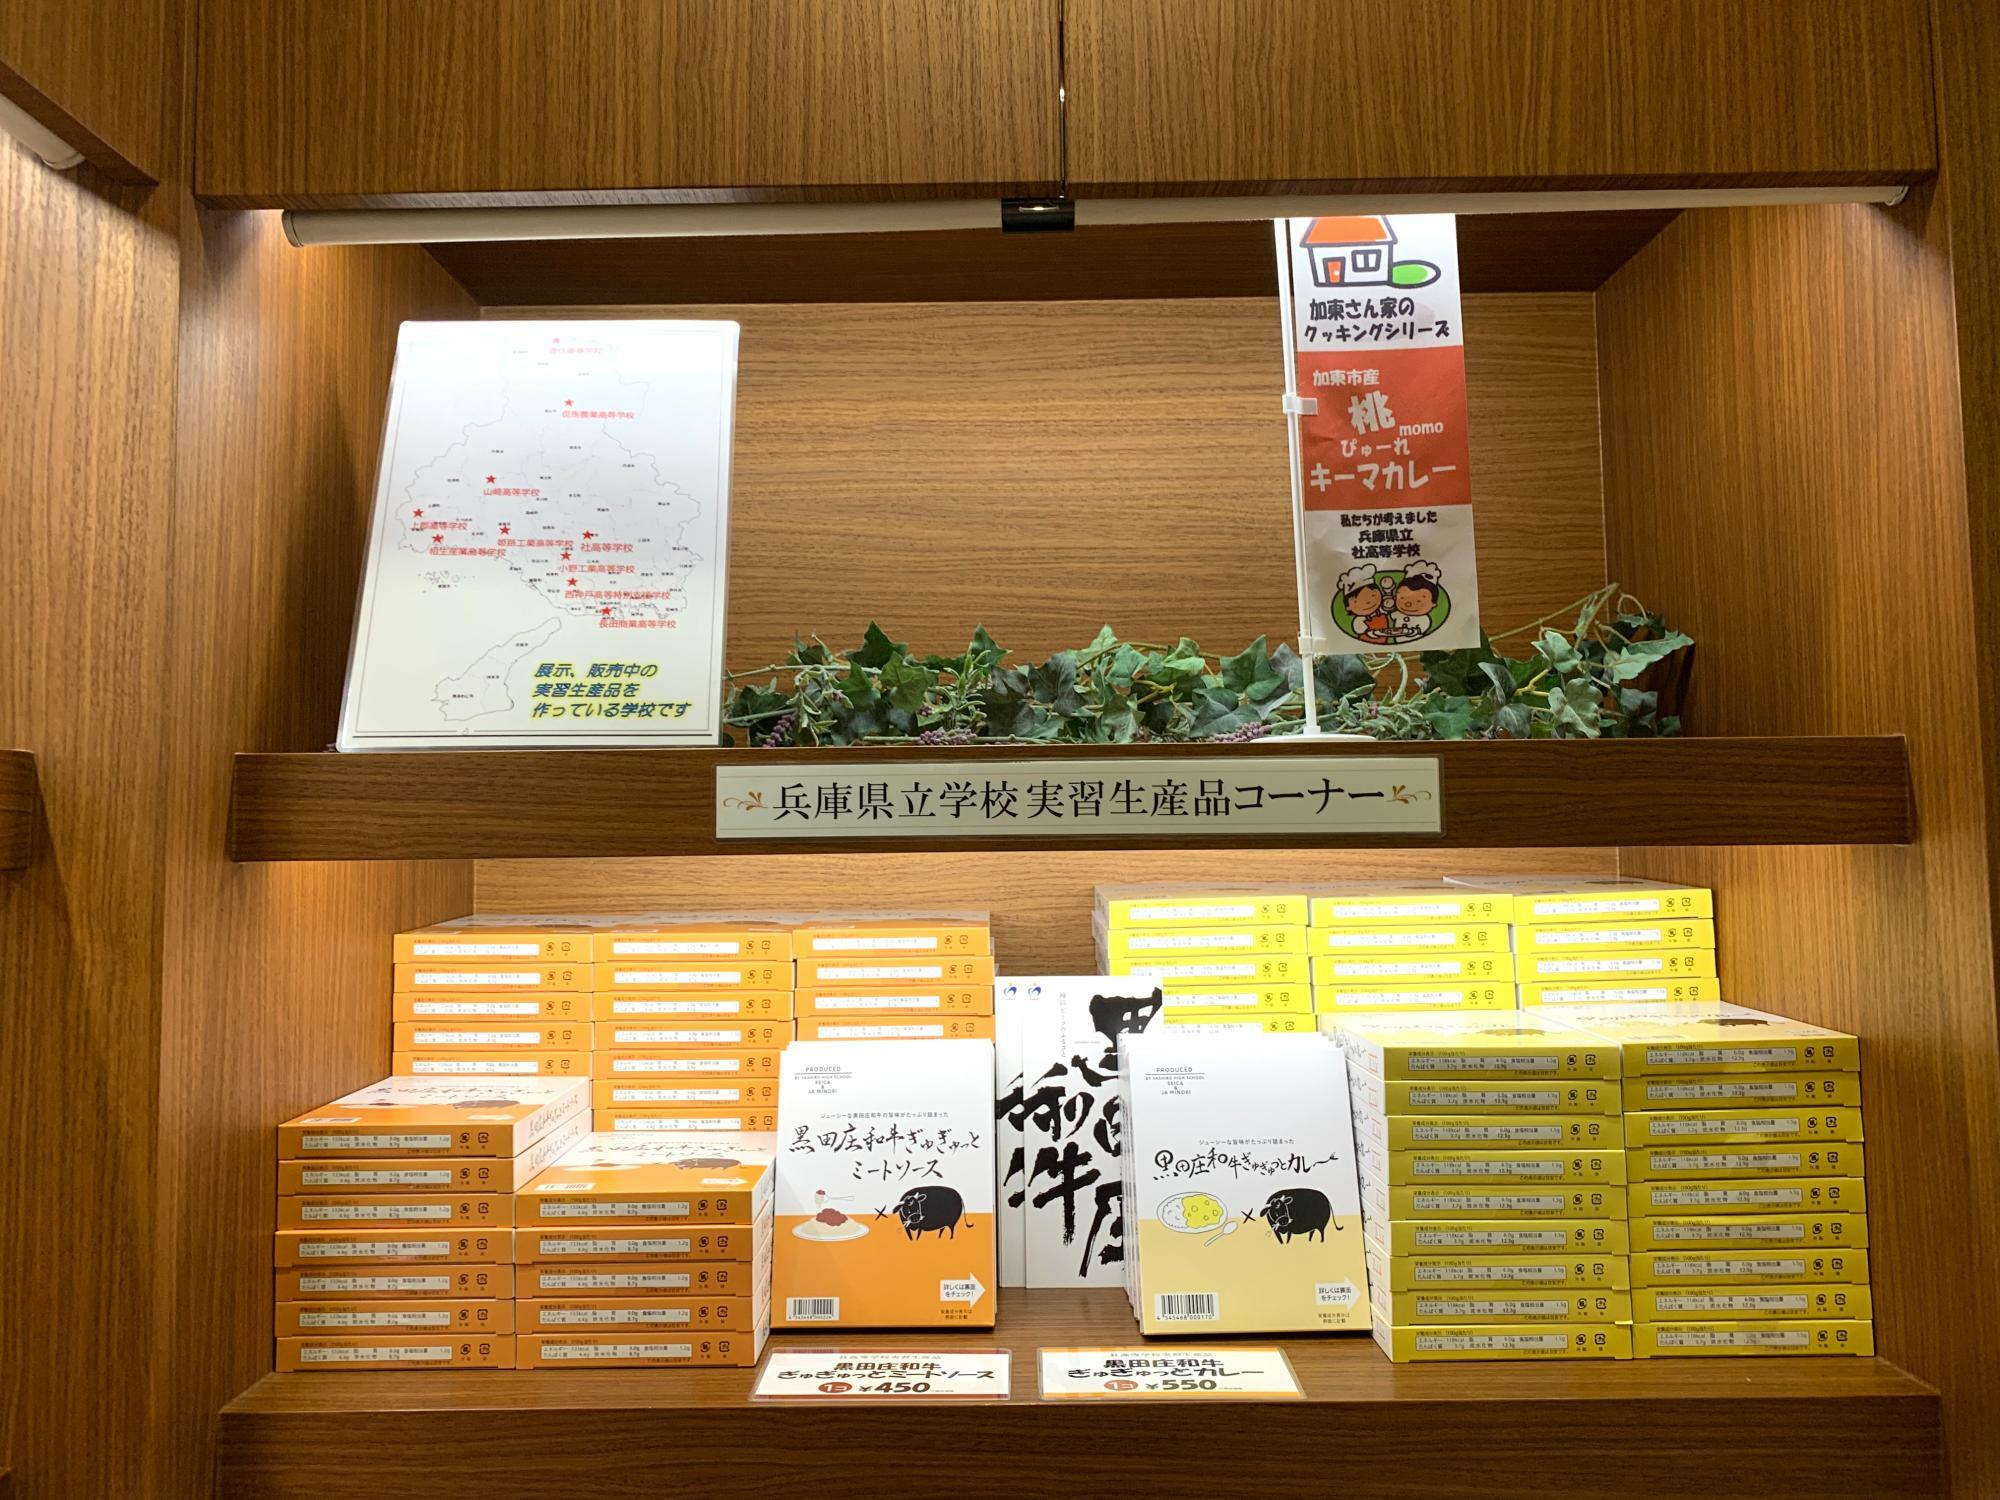 おみやげコーナーの一角にある学生マルシェ「兵庫県立学校実習生産品コーナー」